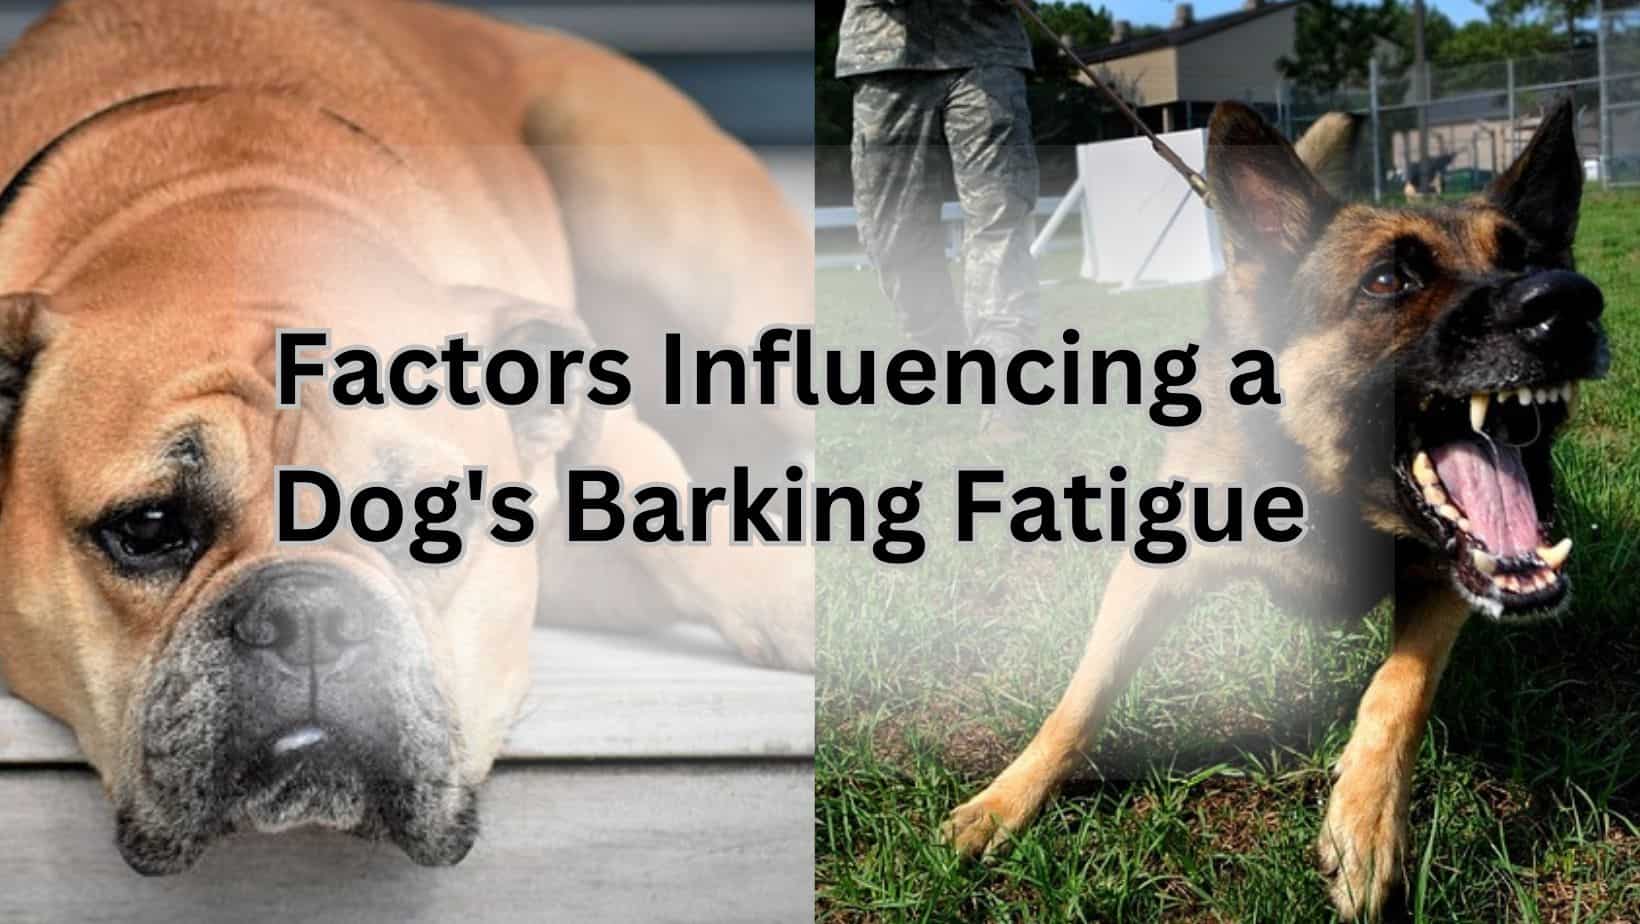 Factors Influencing a Dog's Barking Fatigue